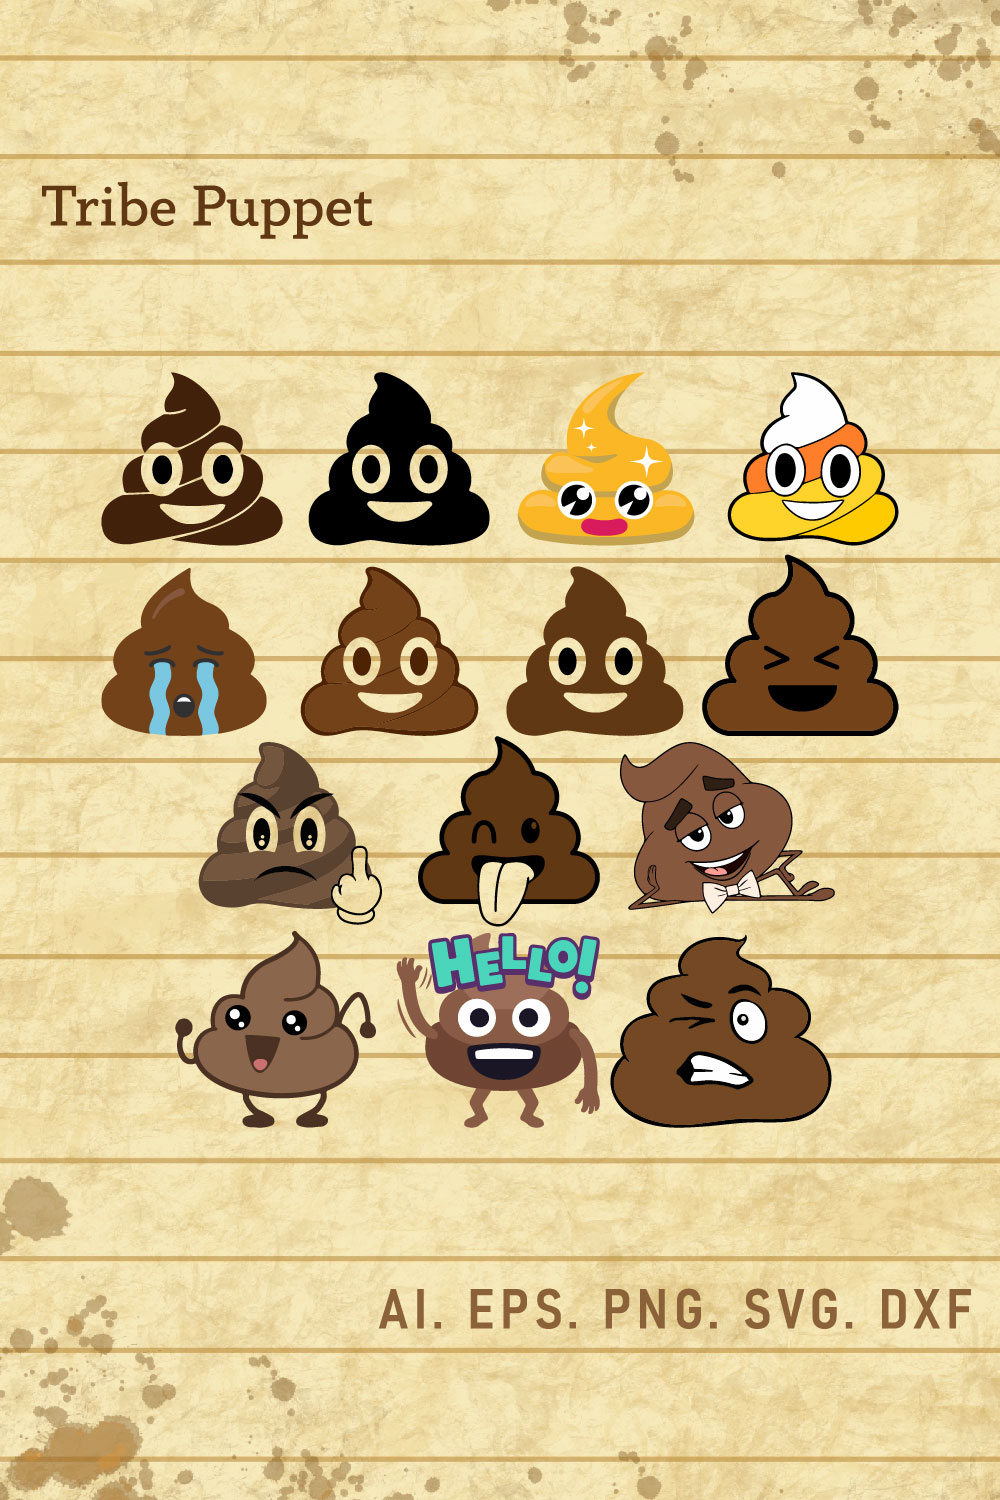 Poop Emoji SVG pinterest preview image.